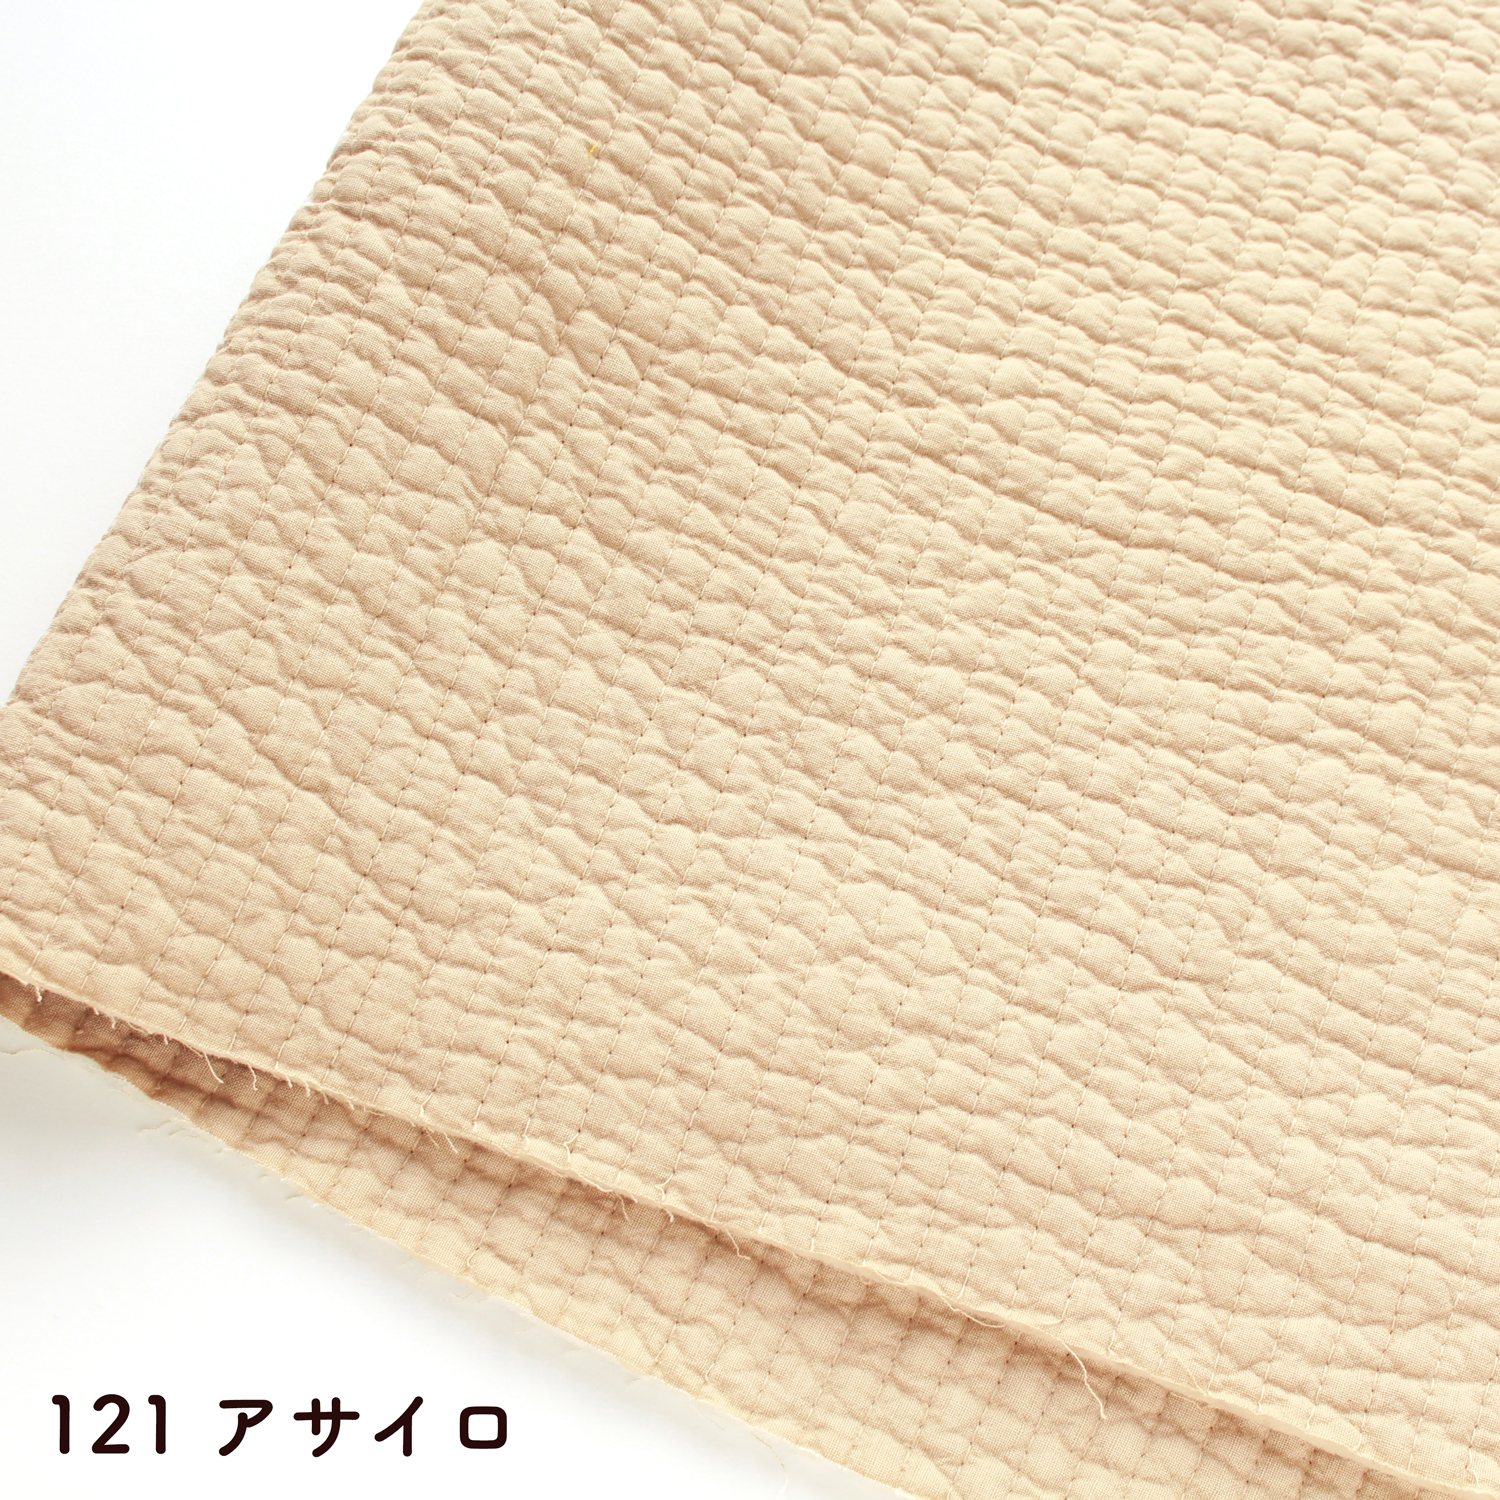 ■NBY307R nubi ヌビ 韓国伝統キルティング生地 巾7mmサイズ 約8m巻 (巻) 8